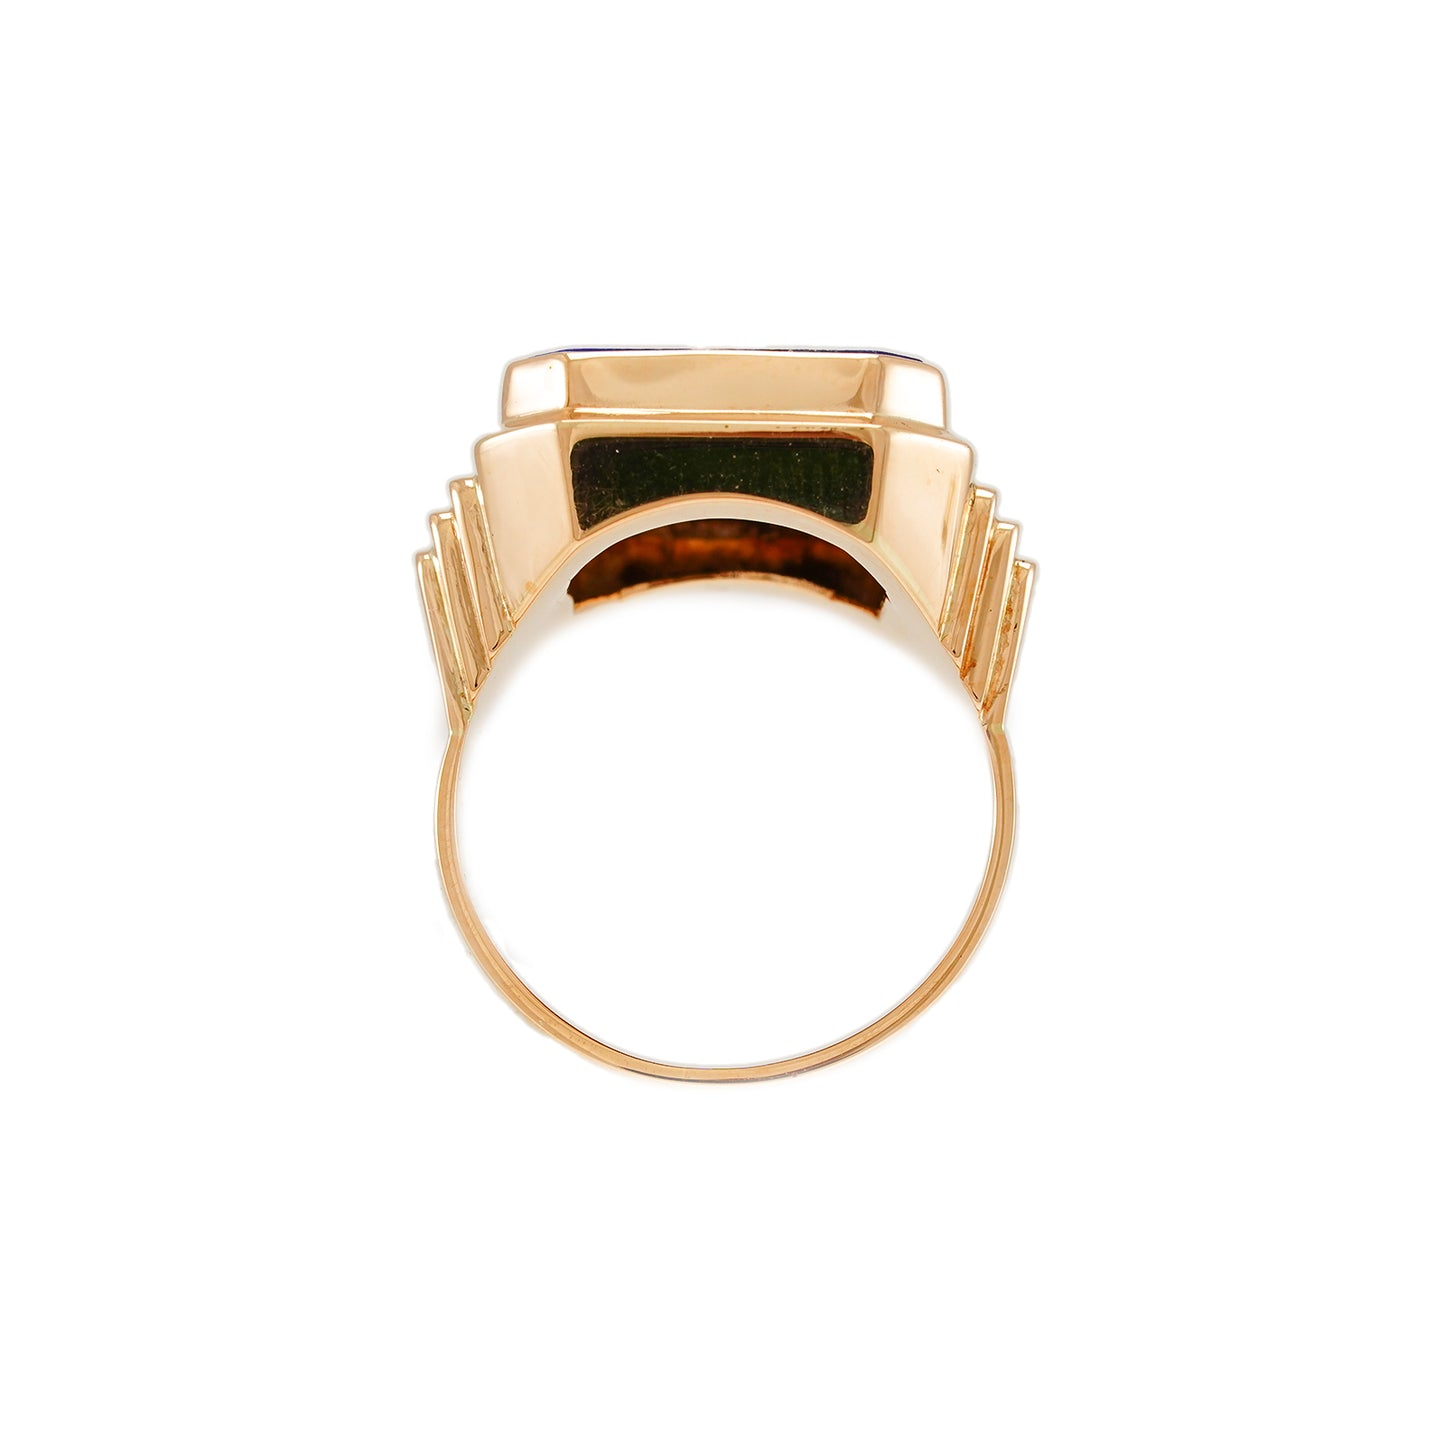 Vintage men's ring gemstone ring lapis yellow gold 14K men's jewelry gold ring signet ring